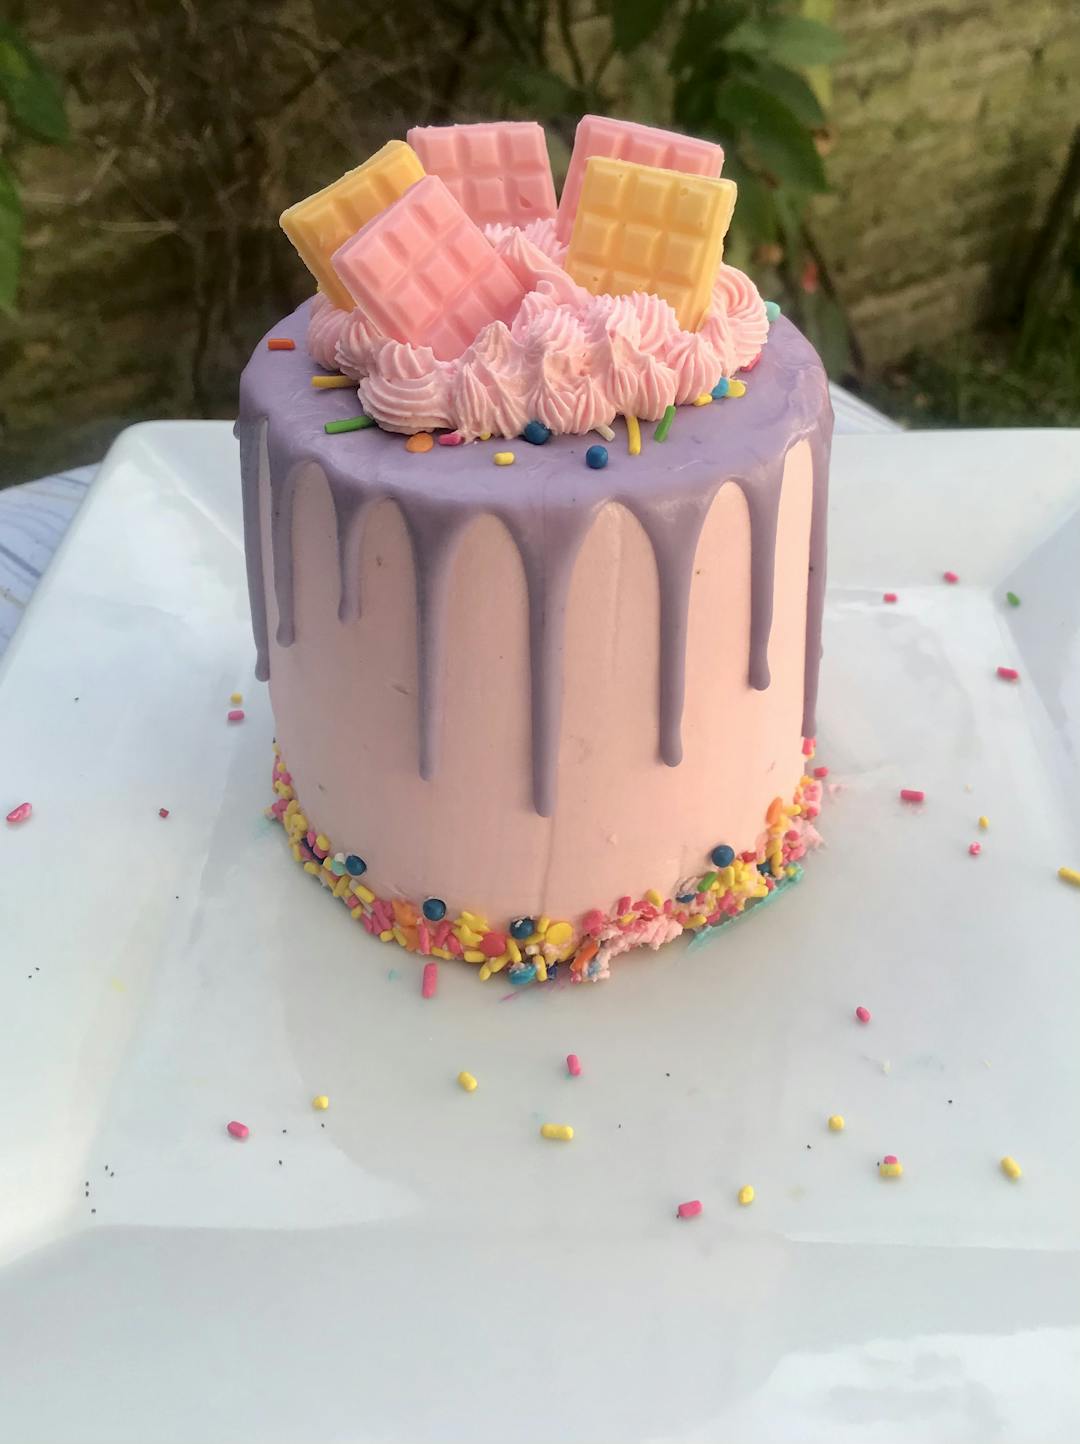 Mini drip cakes